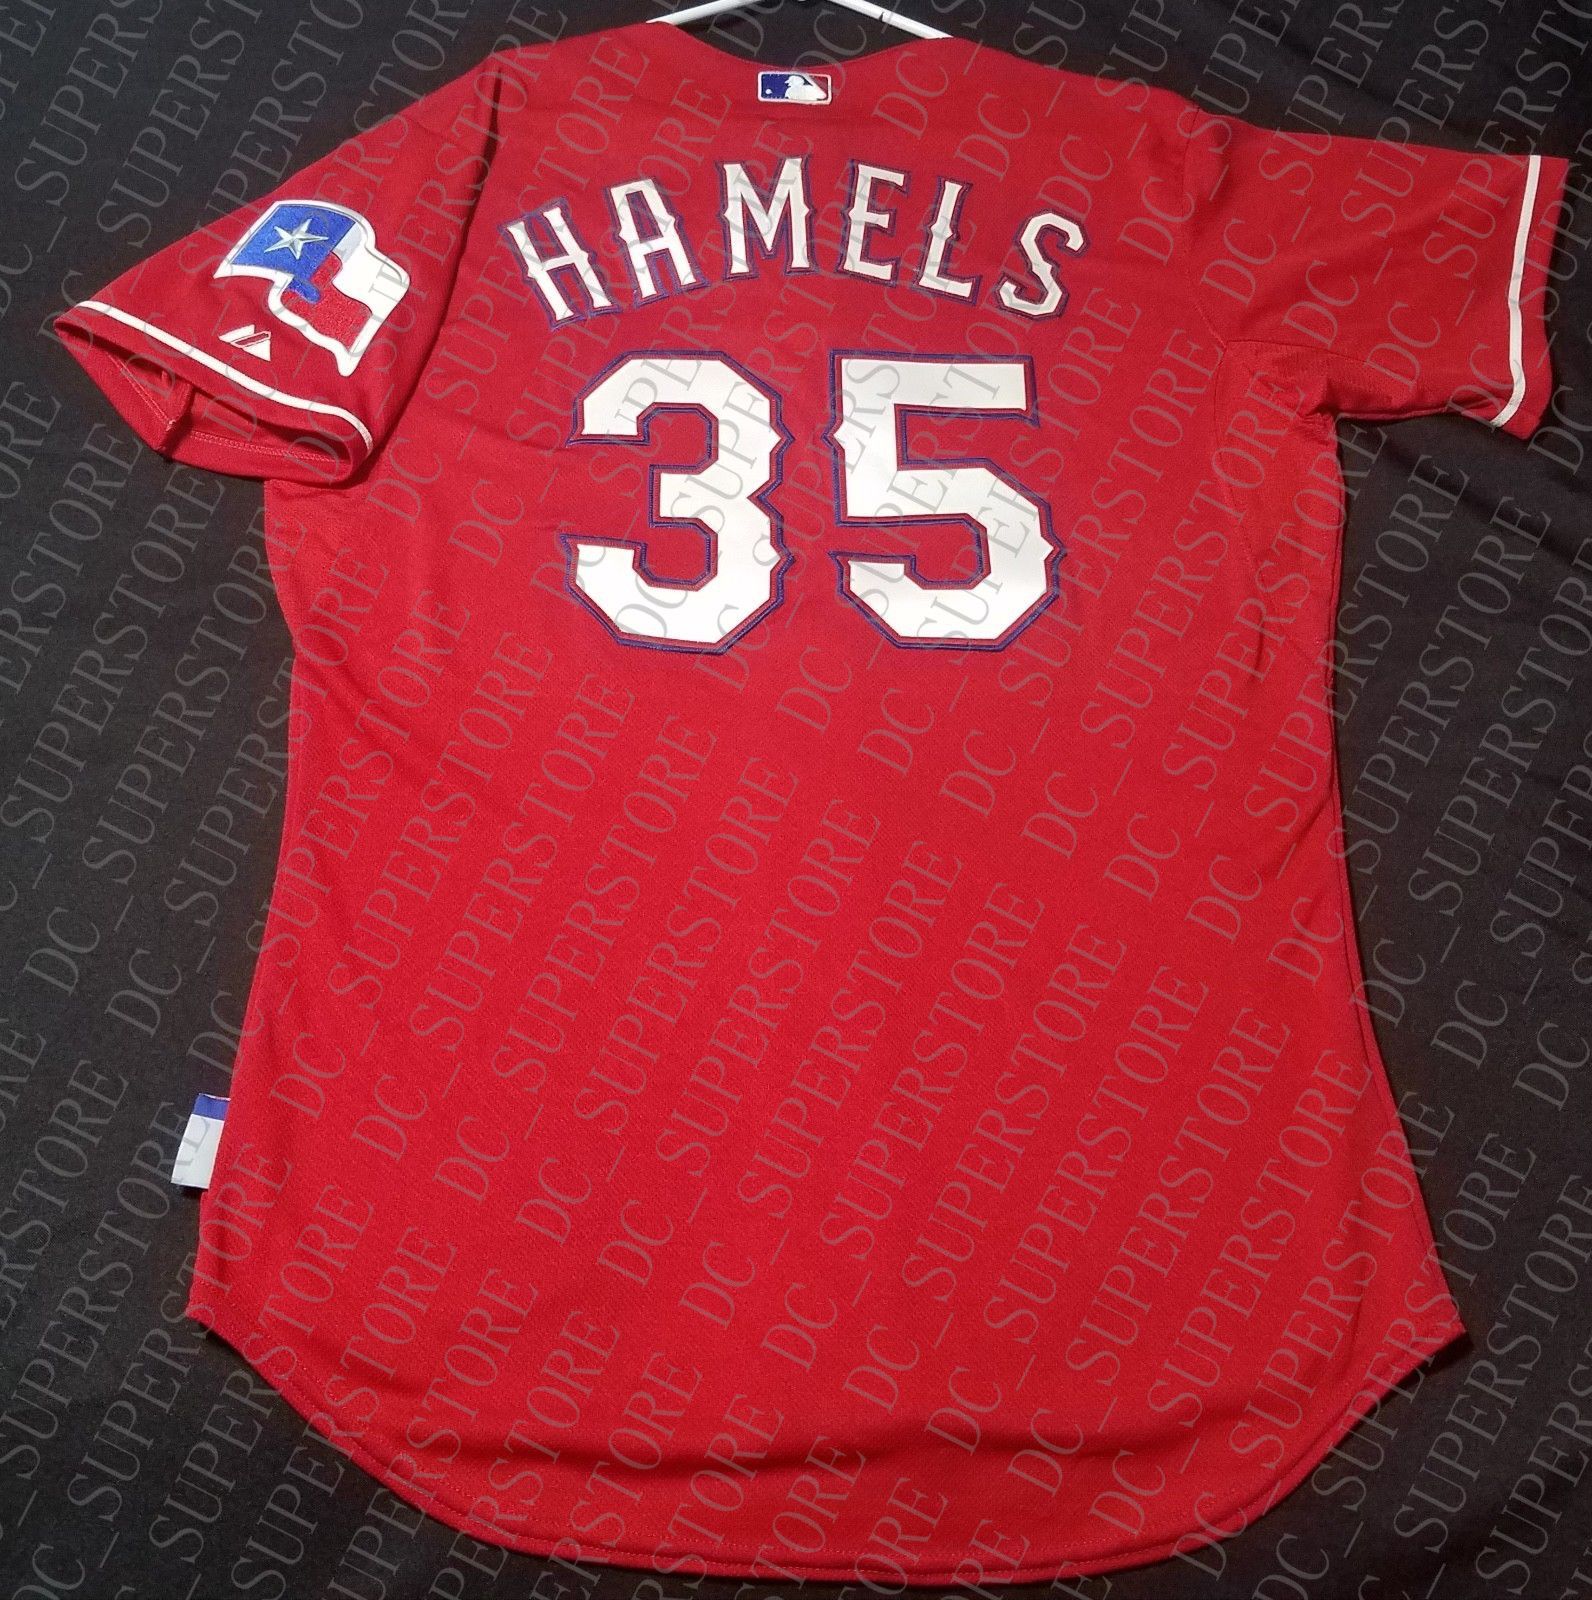 cole hamels jersey number